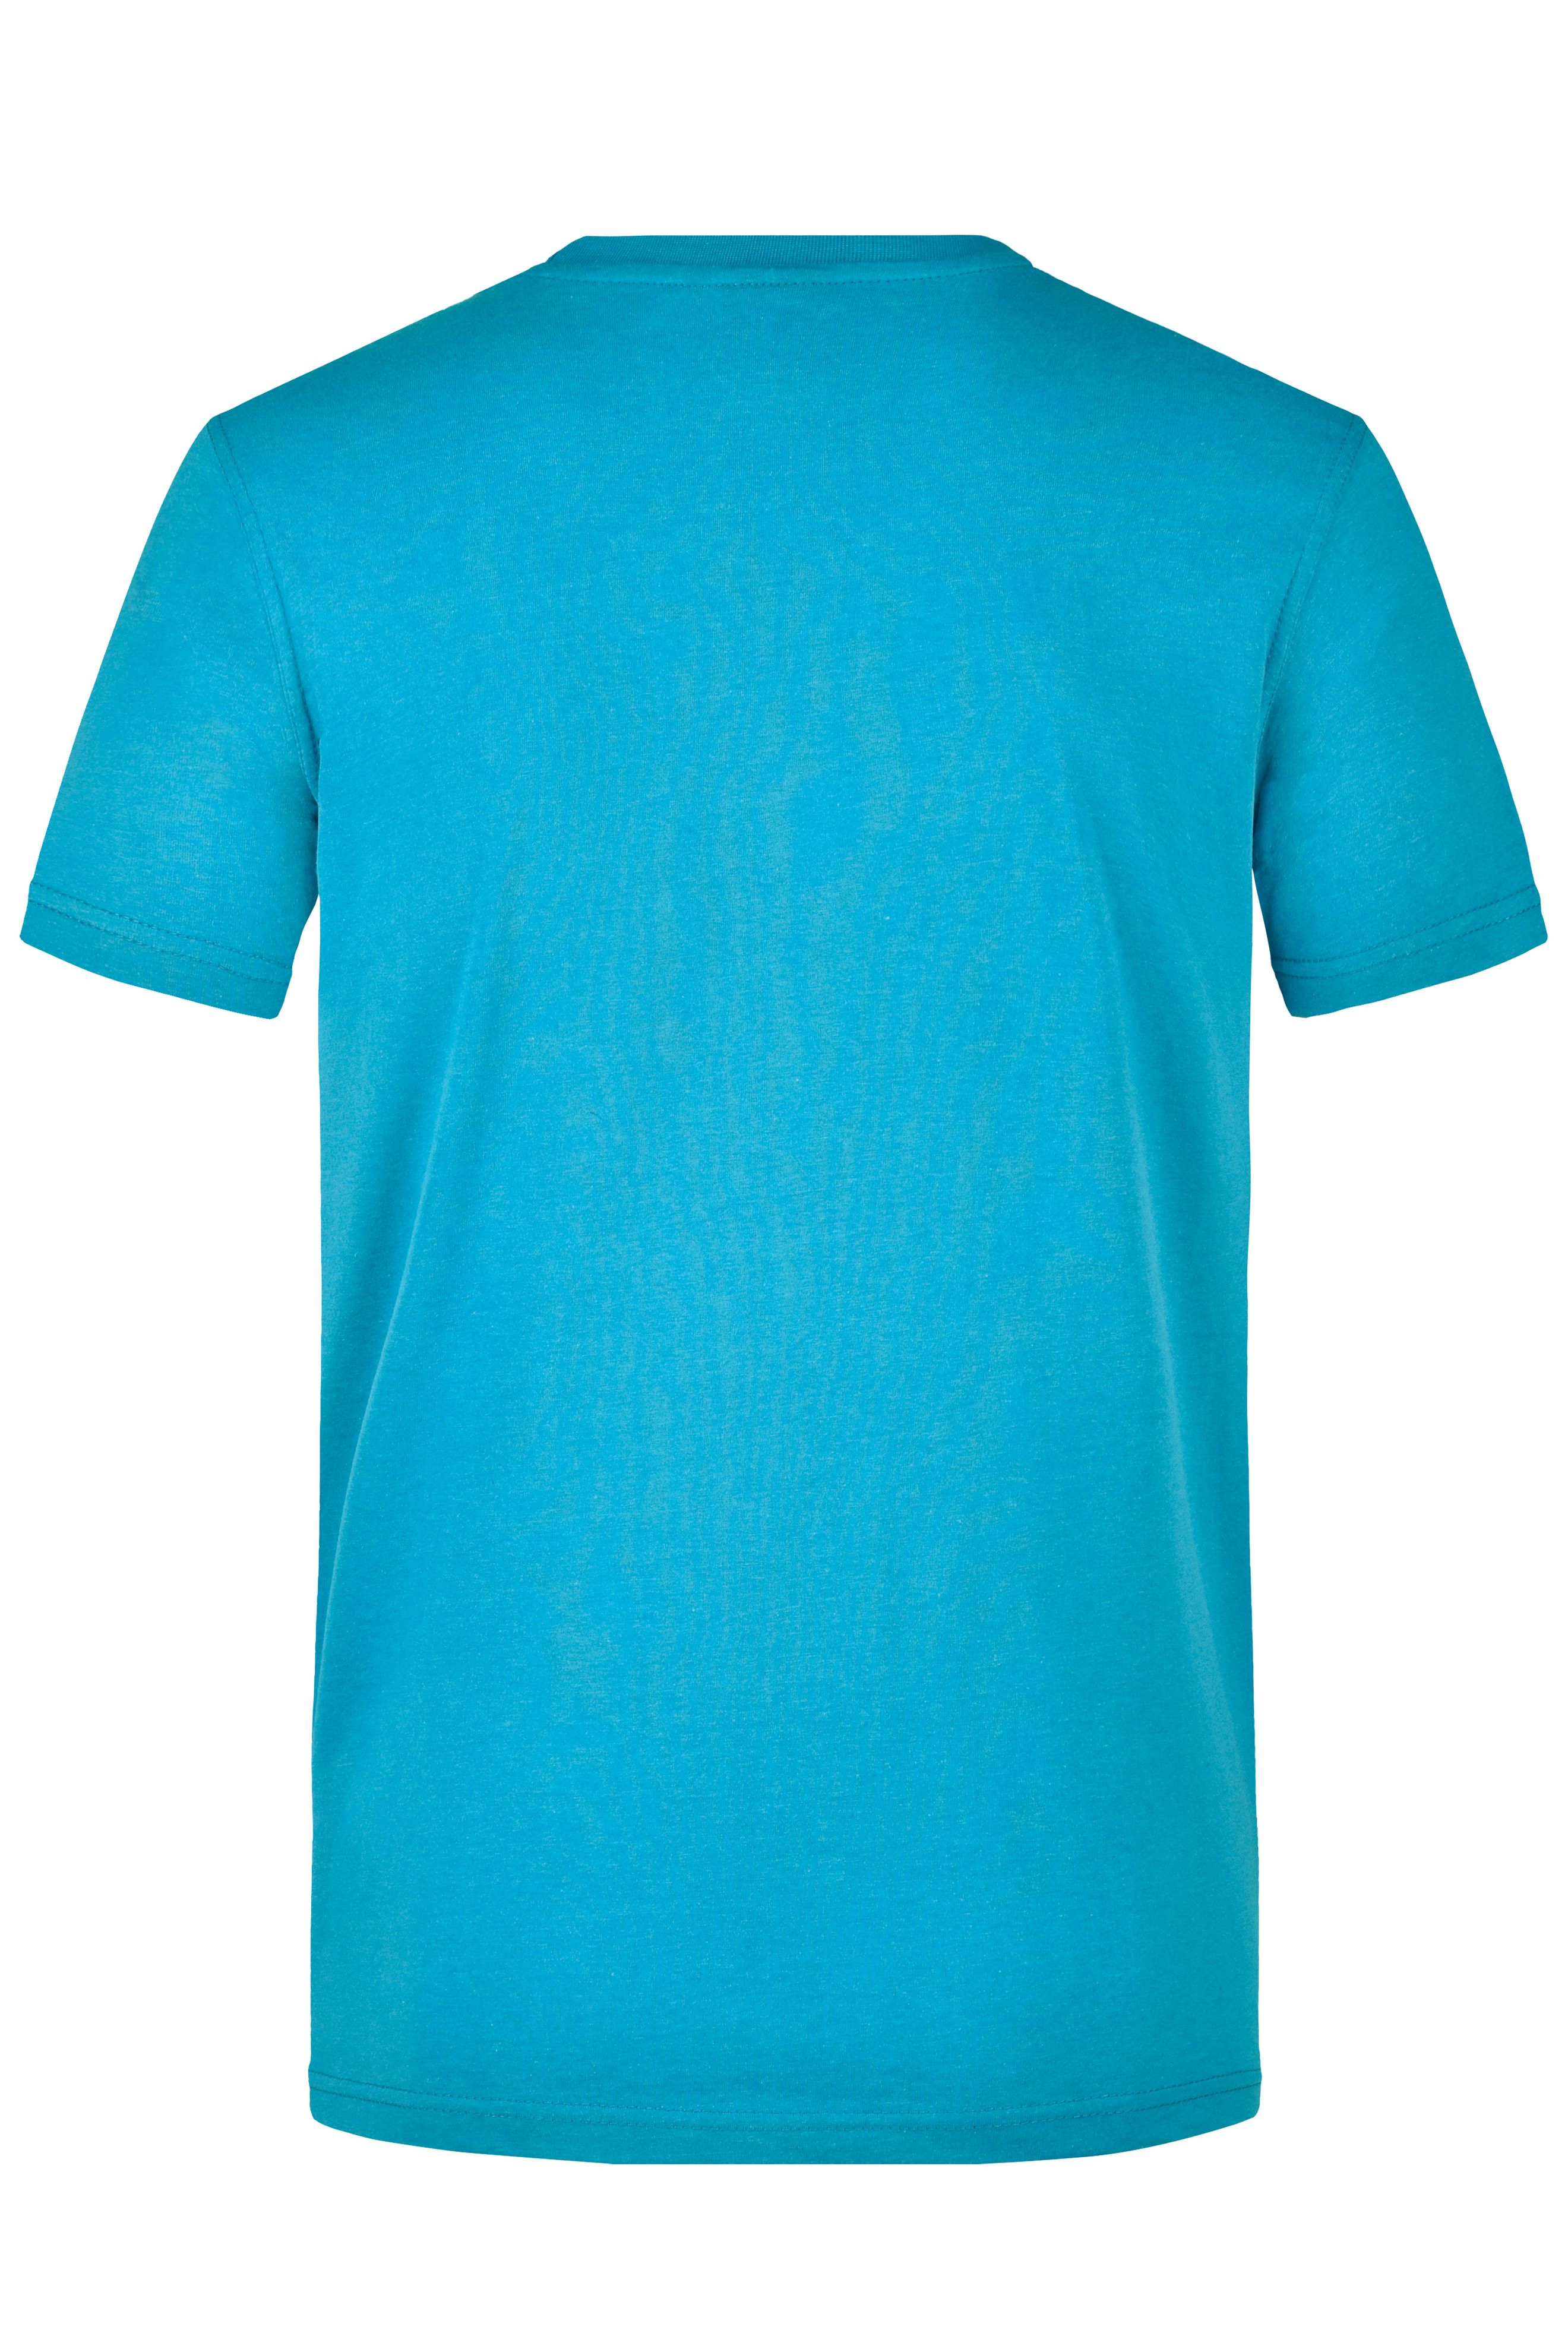 Men's Workwear T-Shirt JN838 Strapazierfähiges und pflegeleichtes T-Shirt